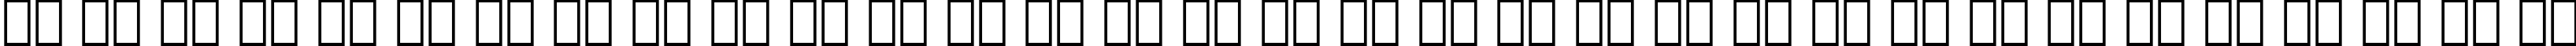 Пример написания русского алфавита шрифтом Freeform 721 Black Italic BT